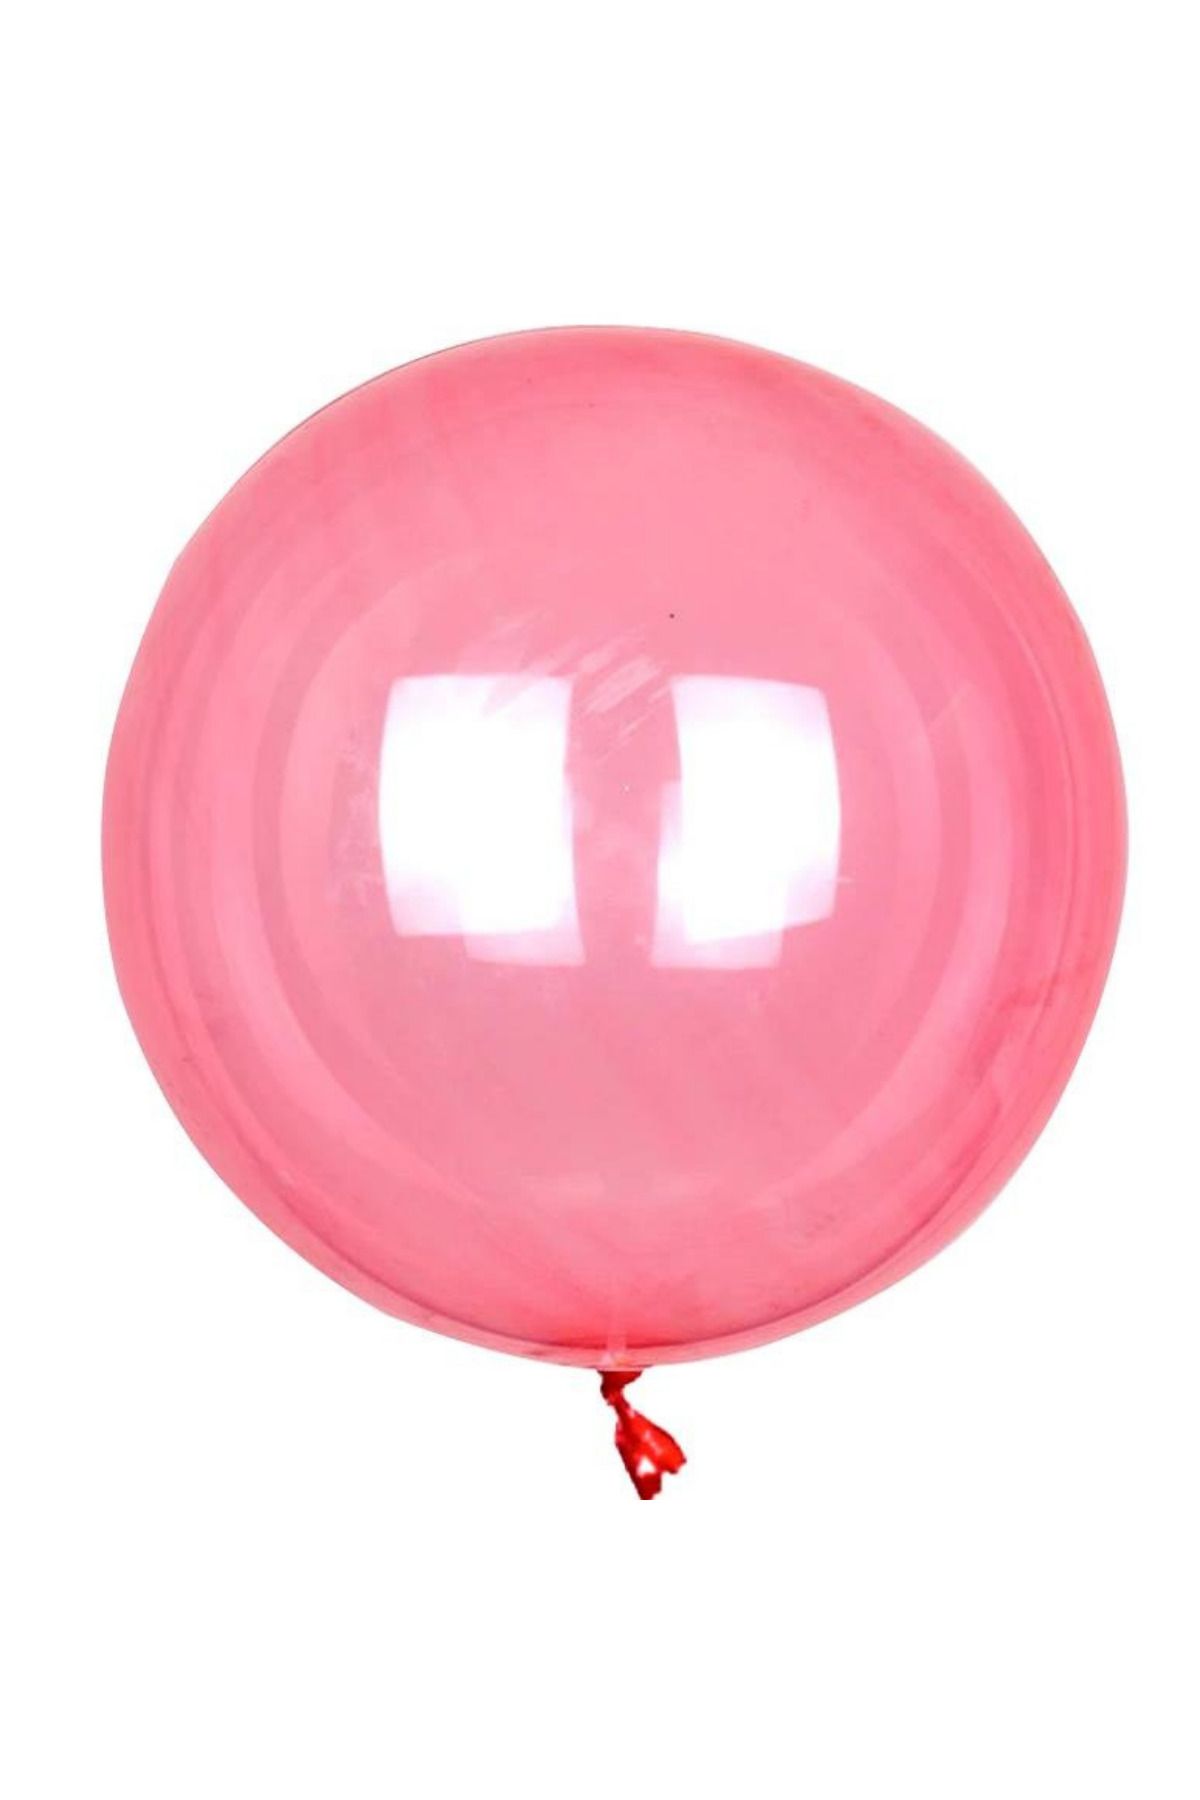 ELGALA ŞEFFAF BALON 20 İNÇ (Yaklaşık 50 cm) İçine Süs Koyulabilen Çok Amaçlı Balon 3 Adet